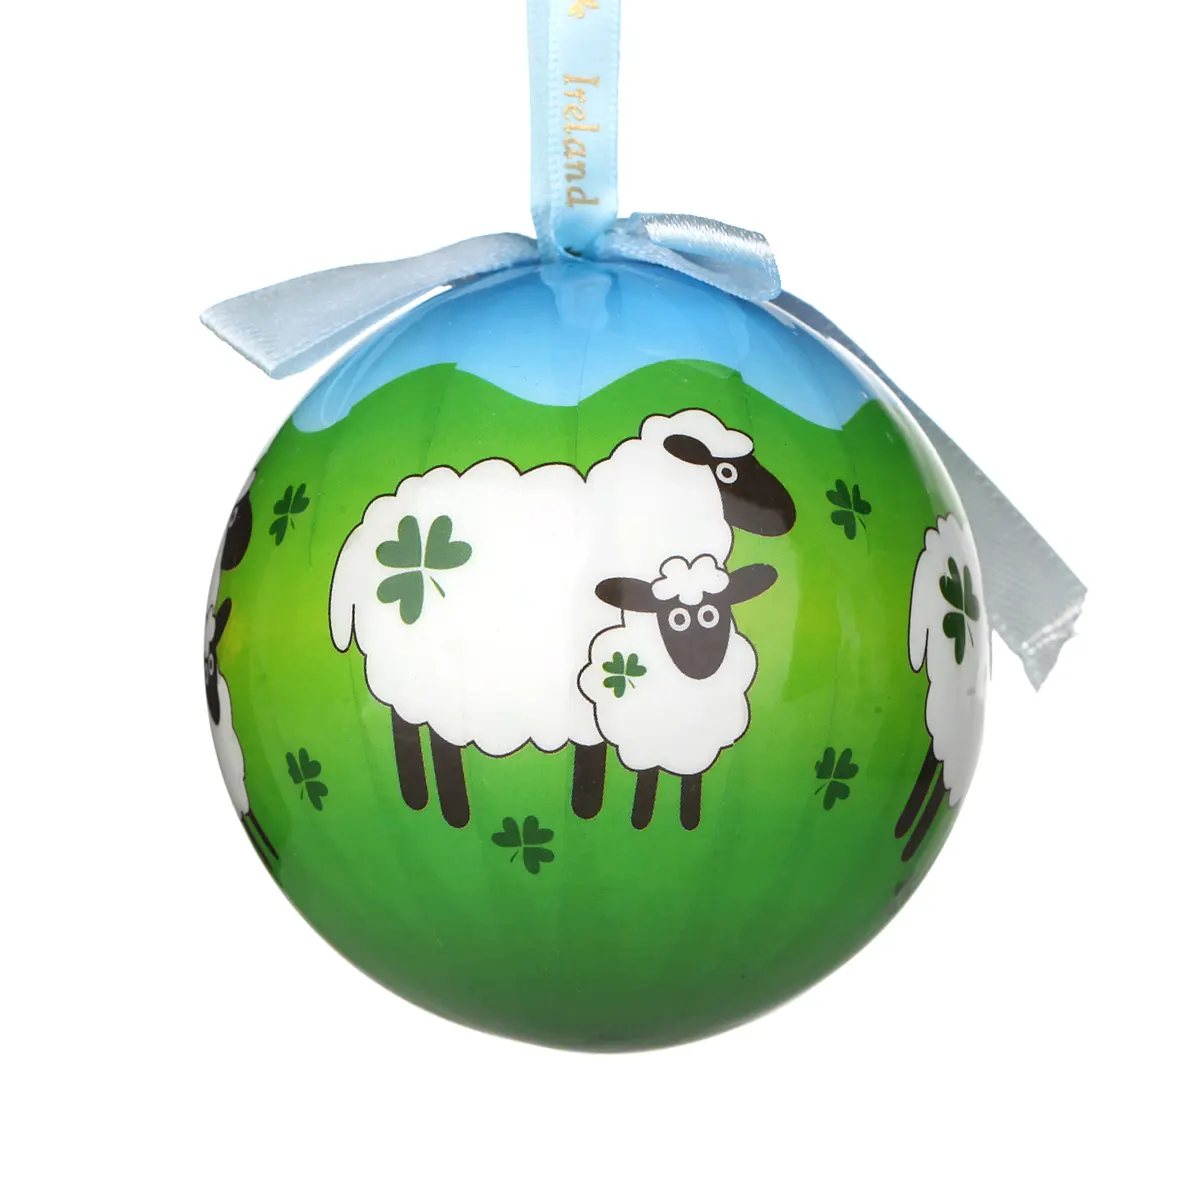 Shamrock Sheep - Traditionell handgefertigte Weihnachtskugel aus Irland mit irischen Schafen